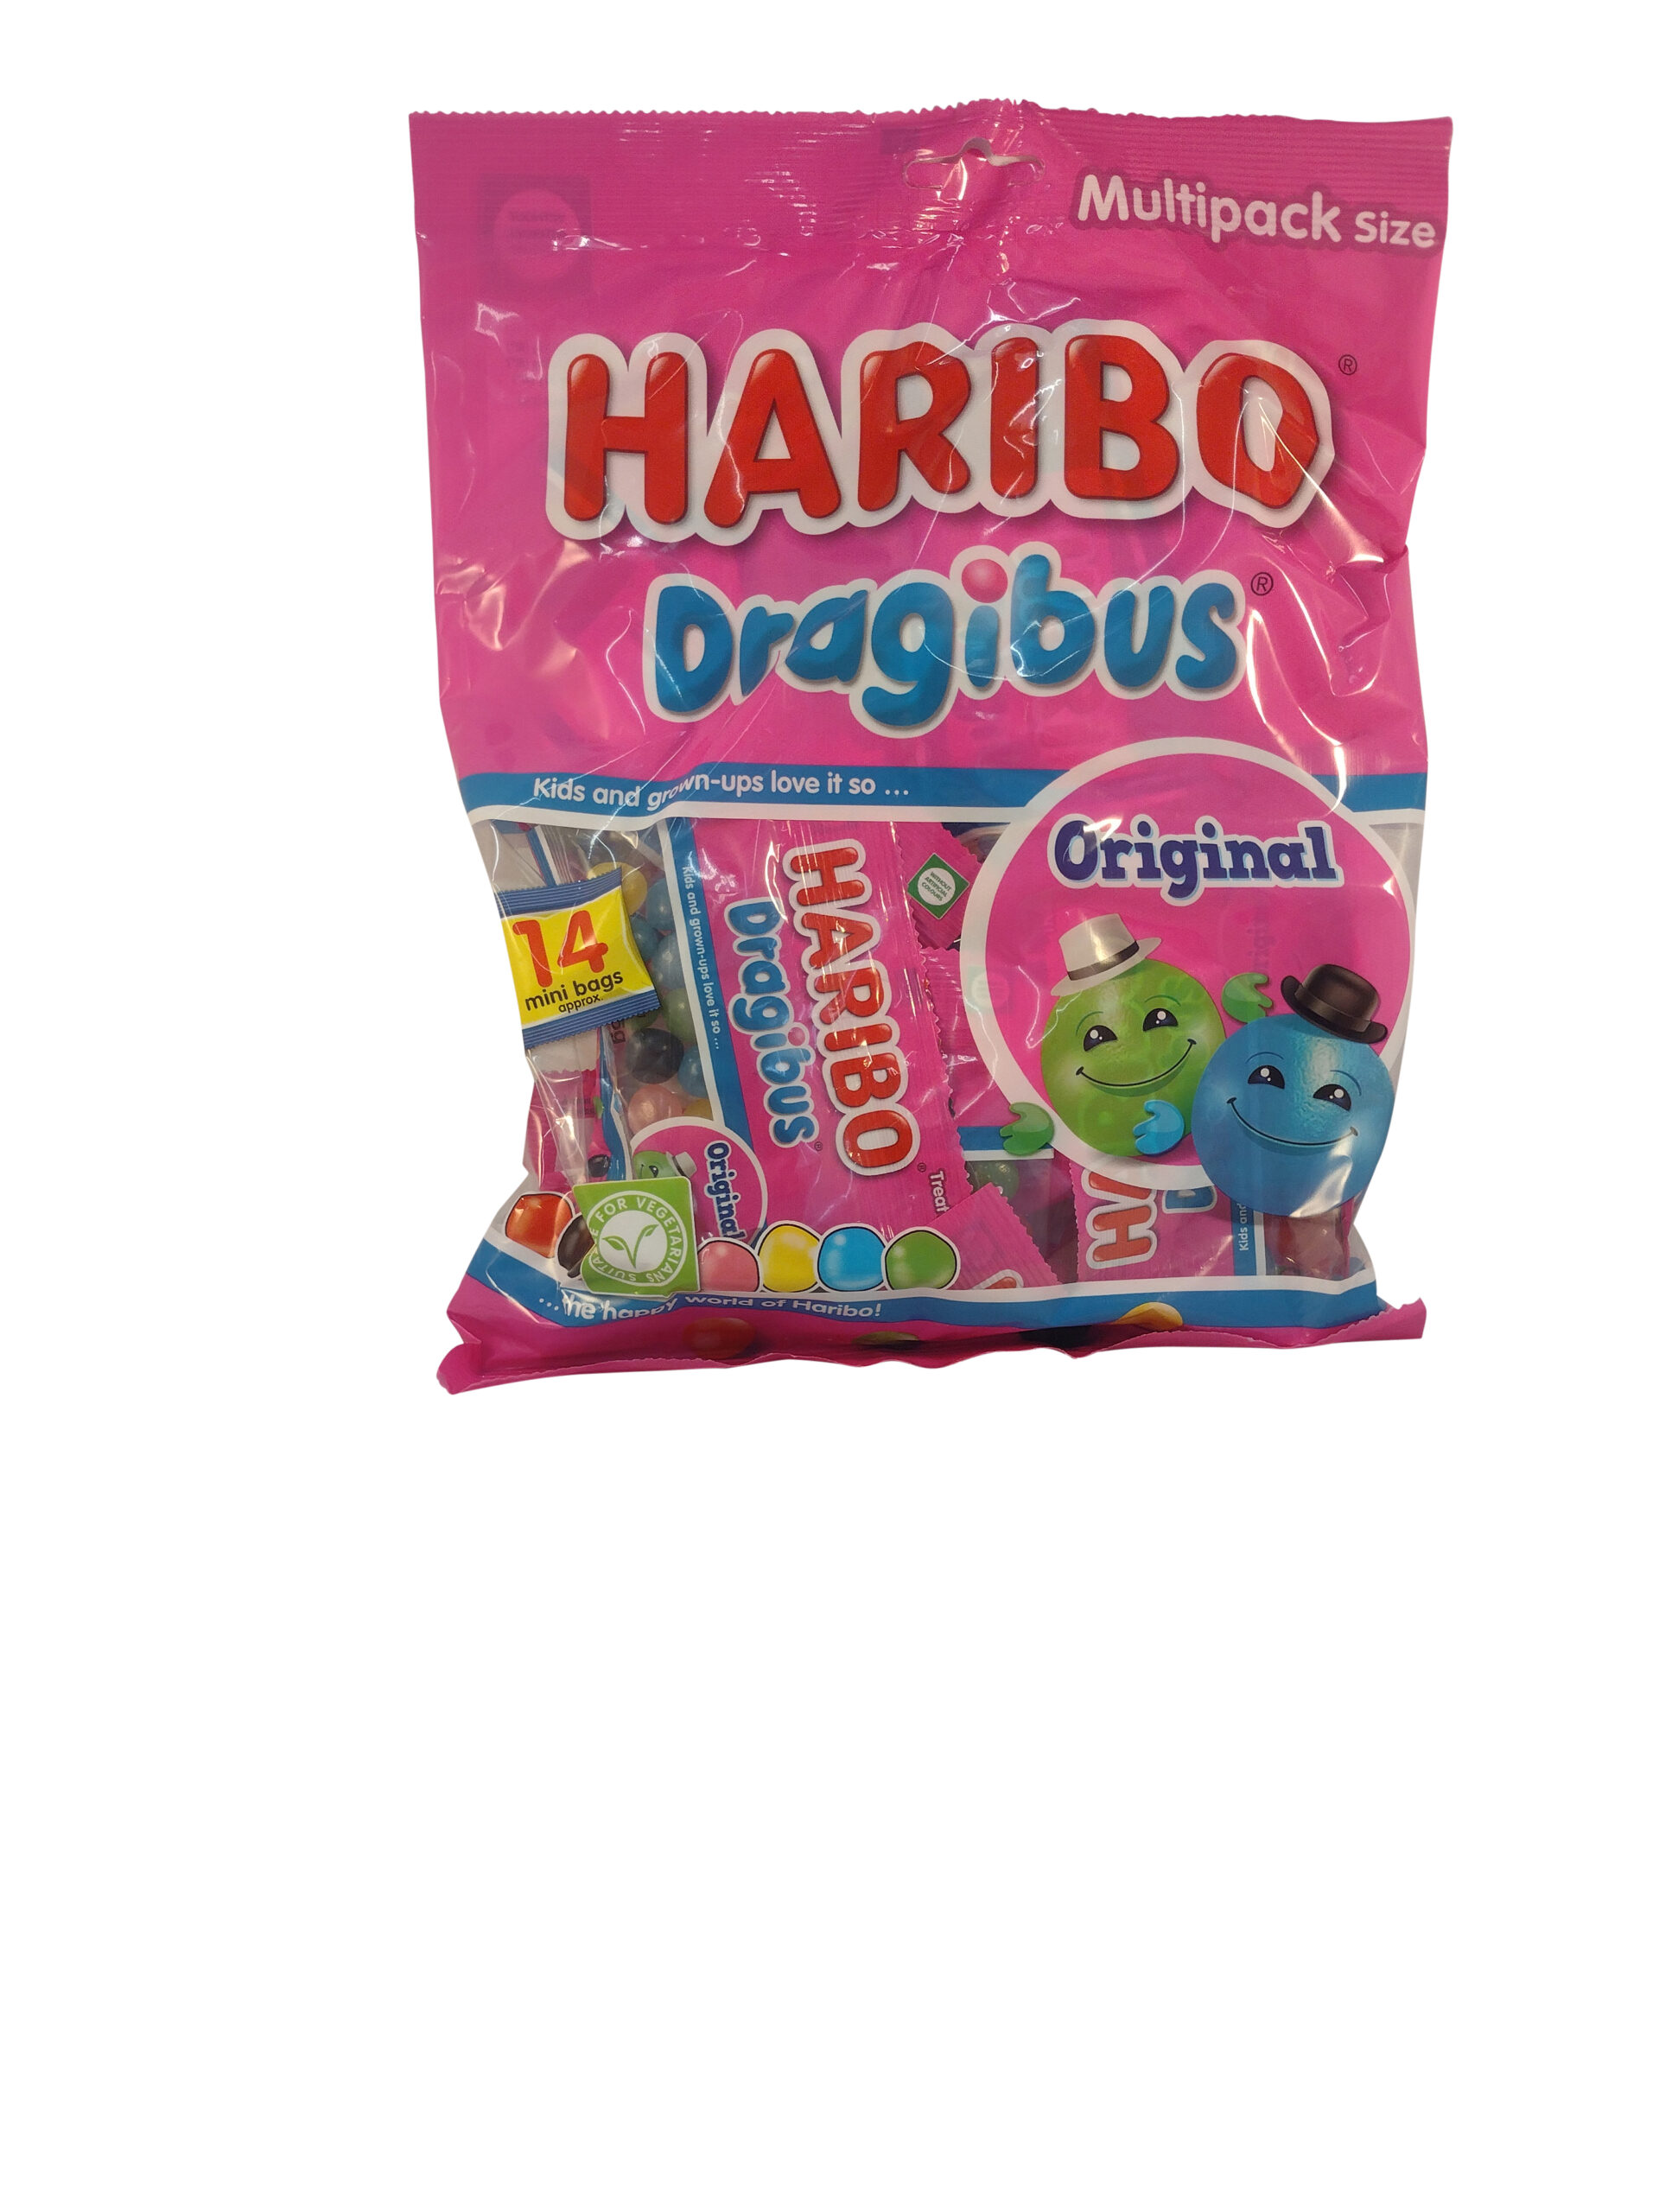 HARIBO Candy, HARIBO Dragibus, HARIBO Gummies, HARIBO Sweets